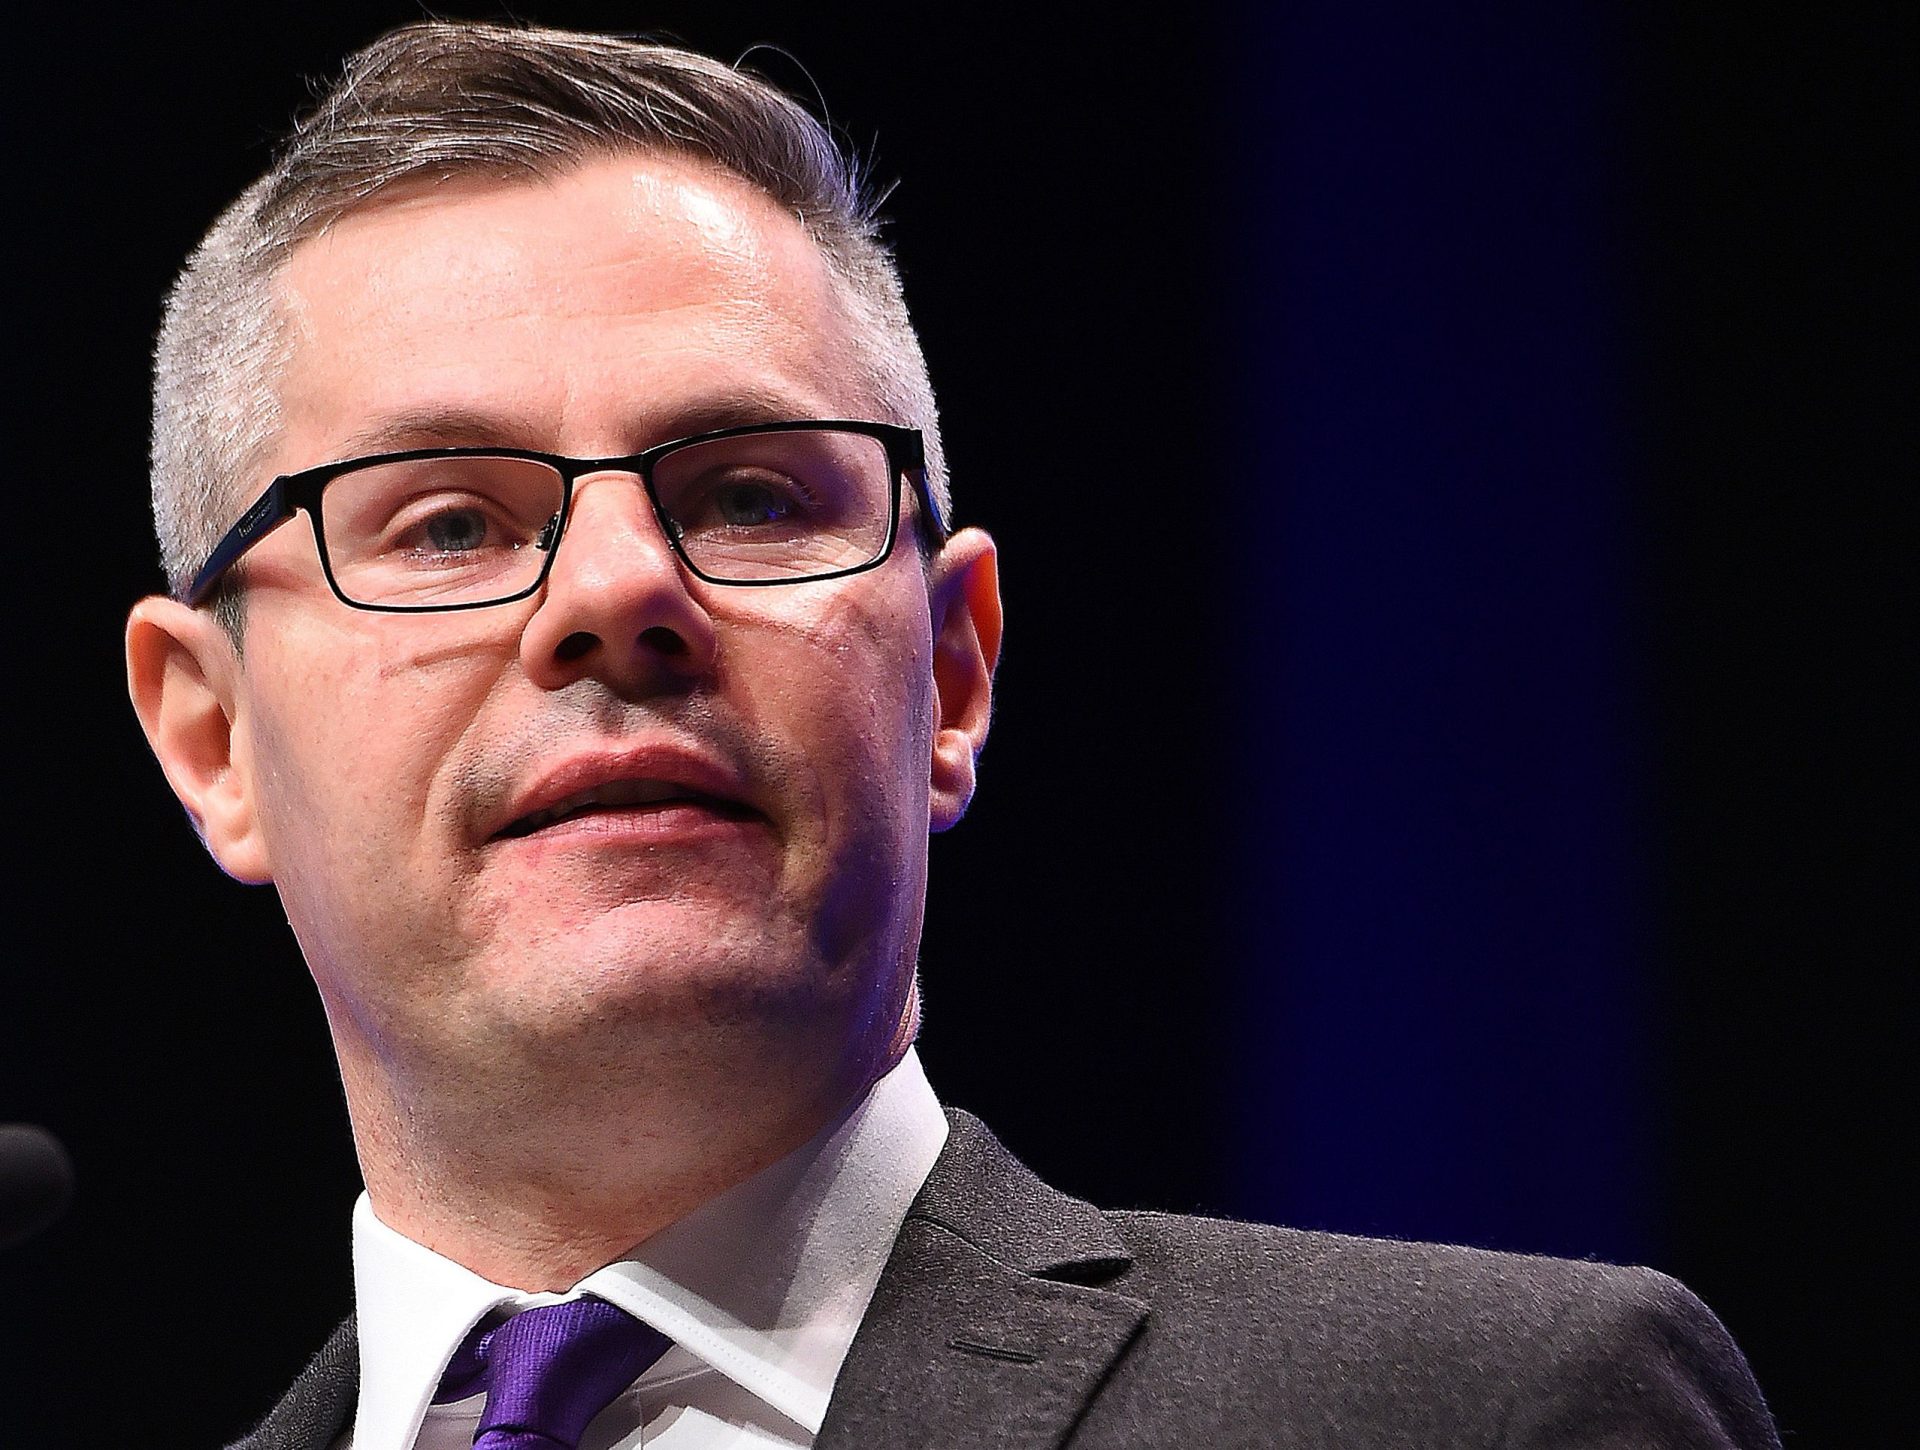 Ministro das Finanças escocês demite-se após enviar centenas de mensagens a adolescente